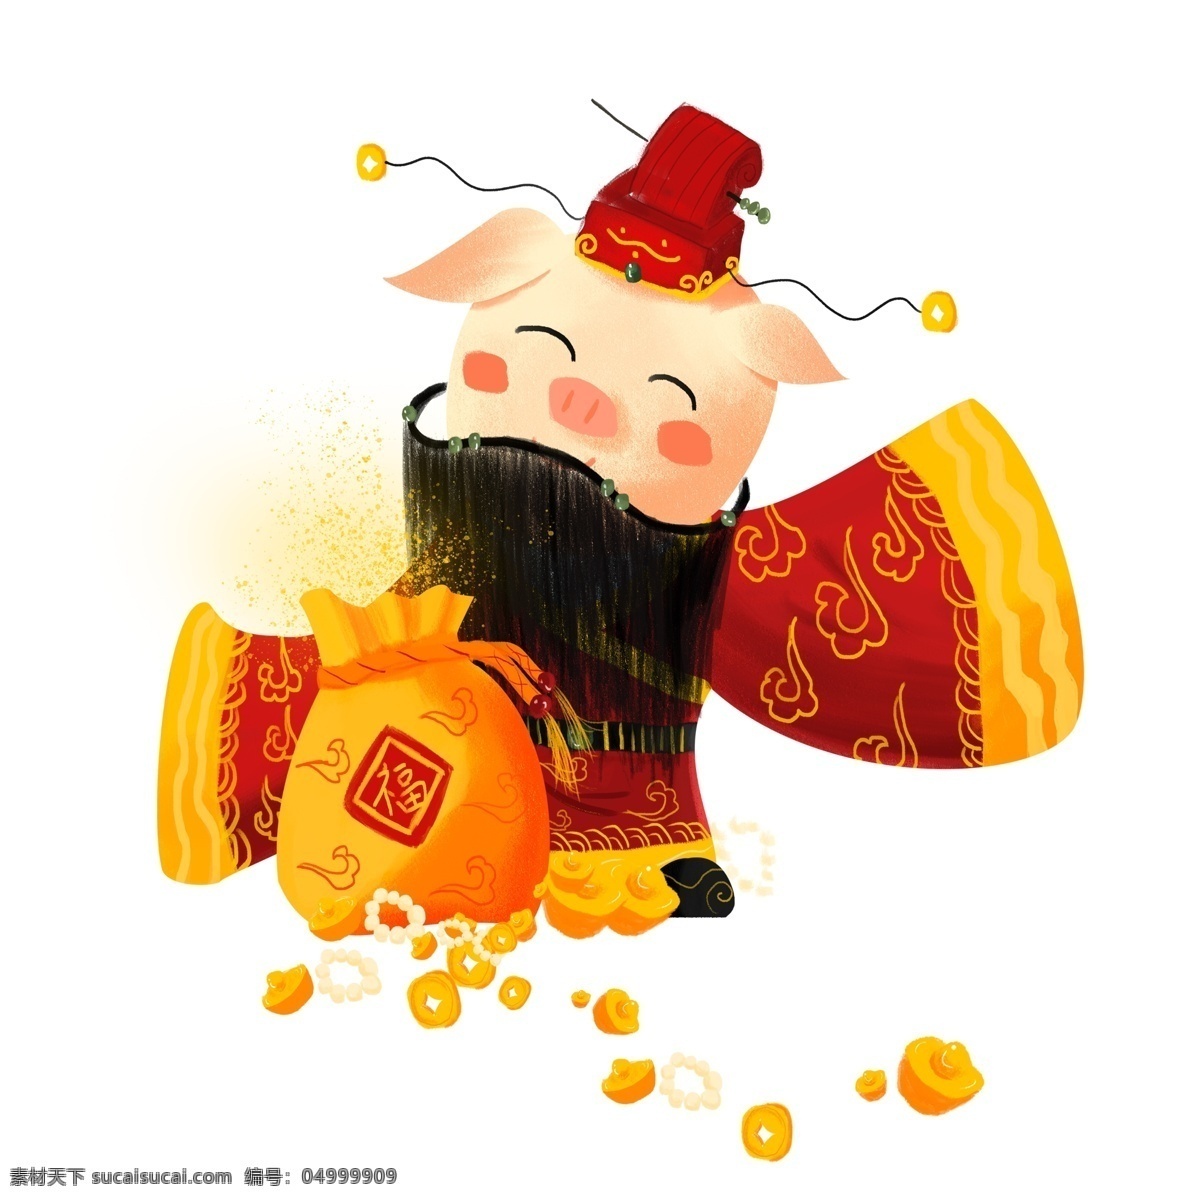 财神爷 中国 风 喜庆 卡通 春节 过年 插画 新年 猪年 2019年 小猪形象 猪年形象 财神猪 卡通小猪 金元宝 财源滚滚